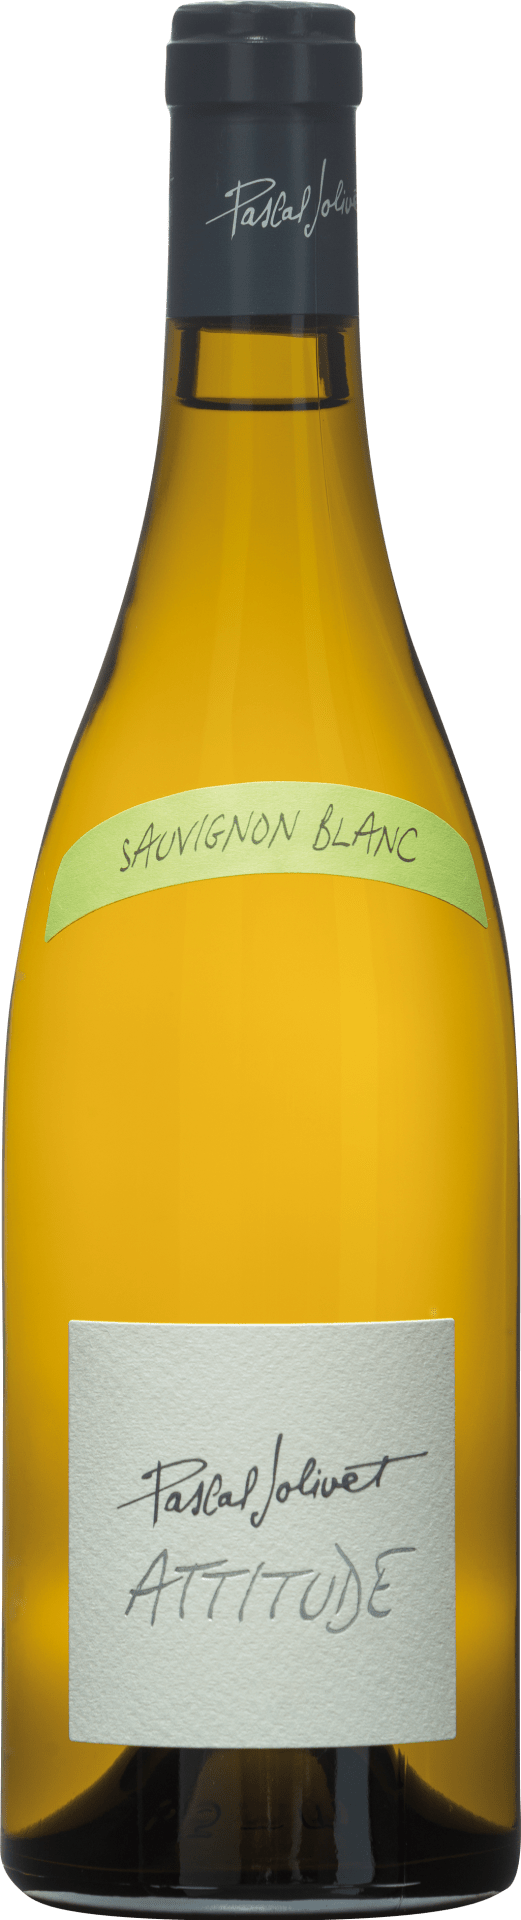 Attitude Sauvignon Blanc